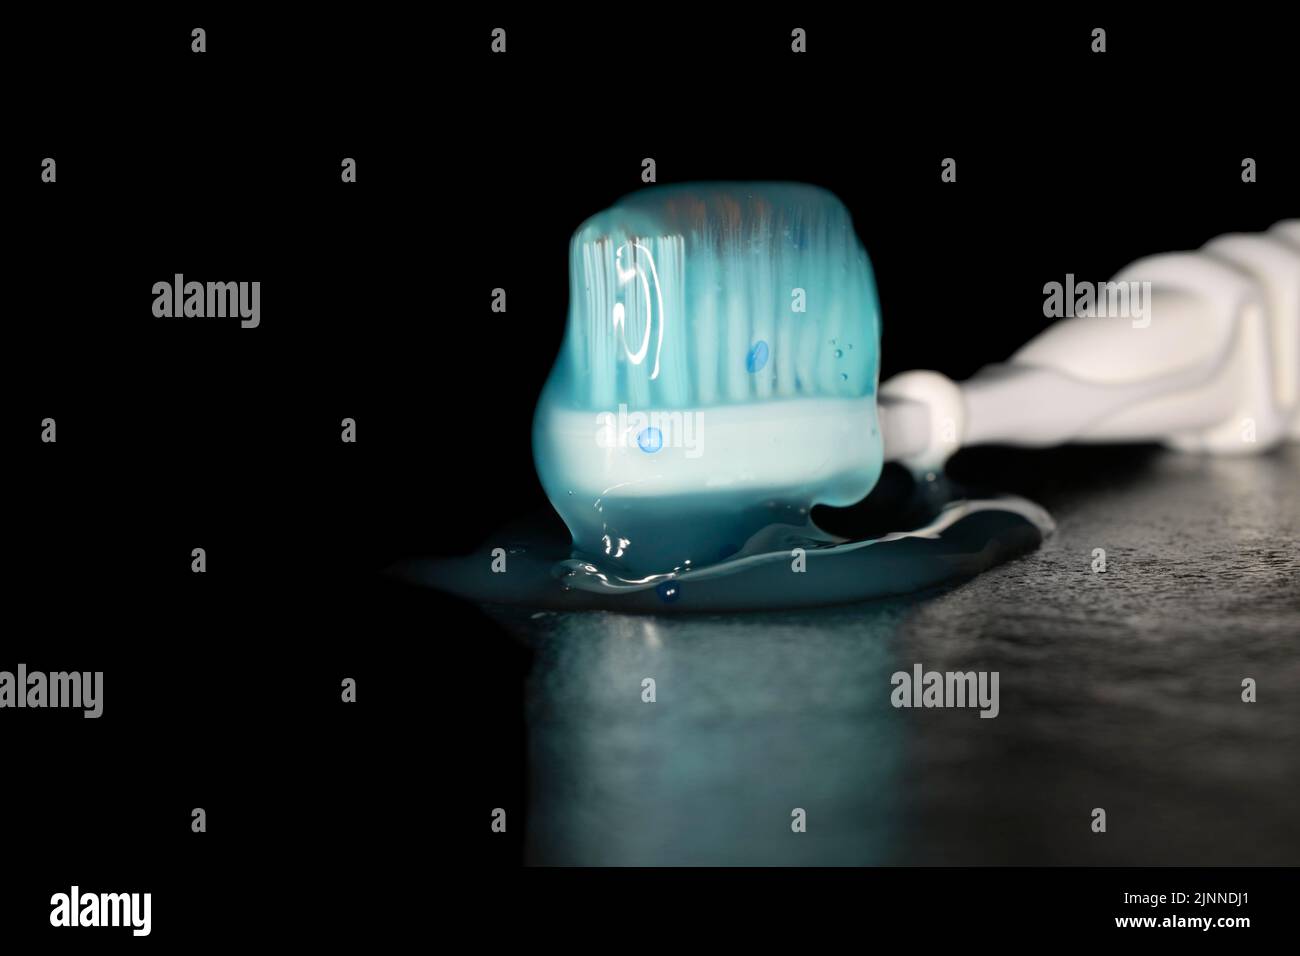 Cepillo de dientes eléctrico con pasta de dientes azul transparente, fotografía de estudio con fondo negro Foto de stock